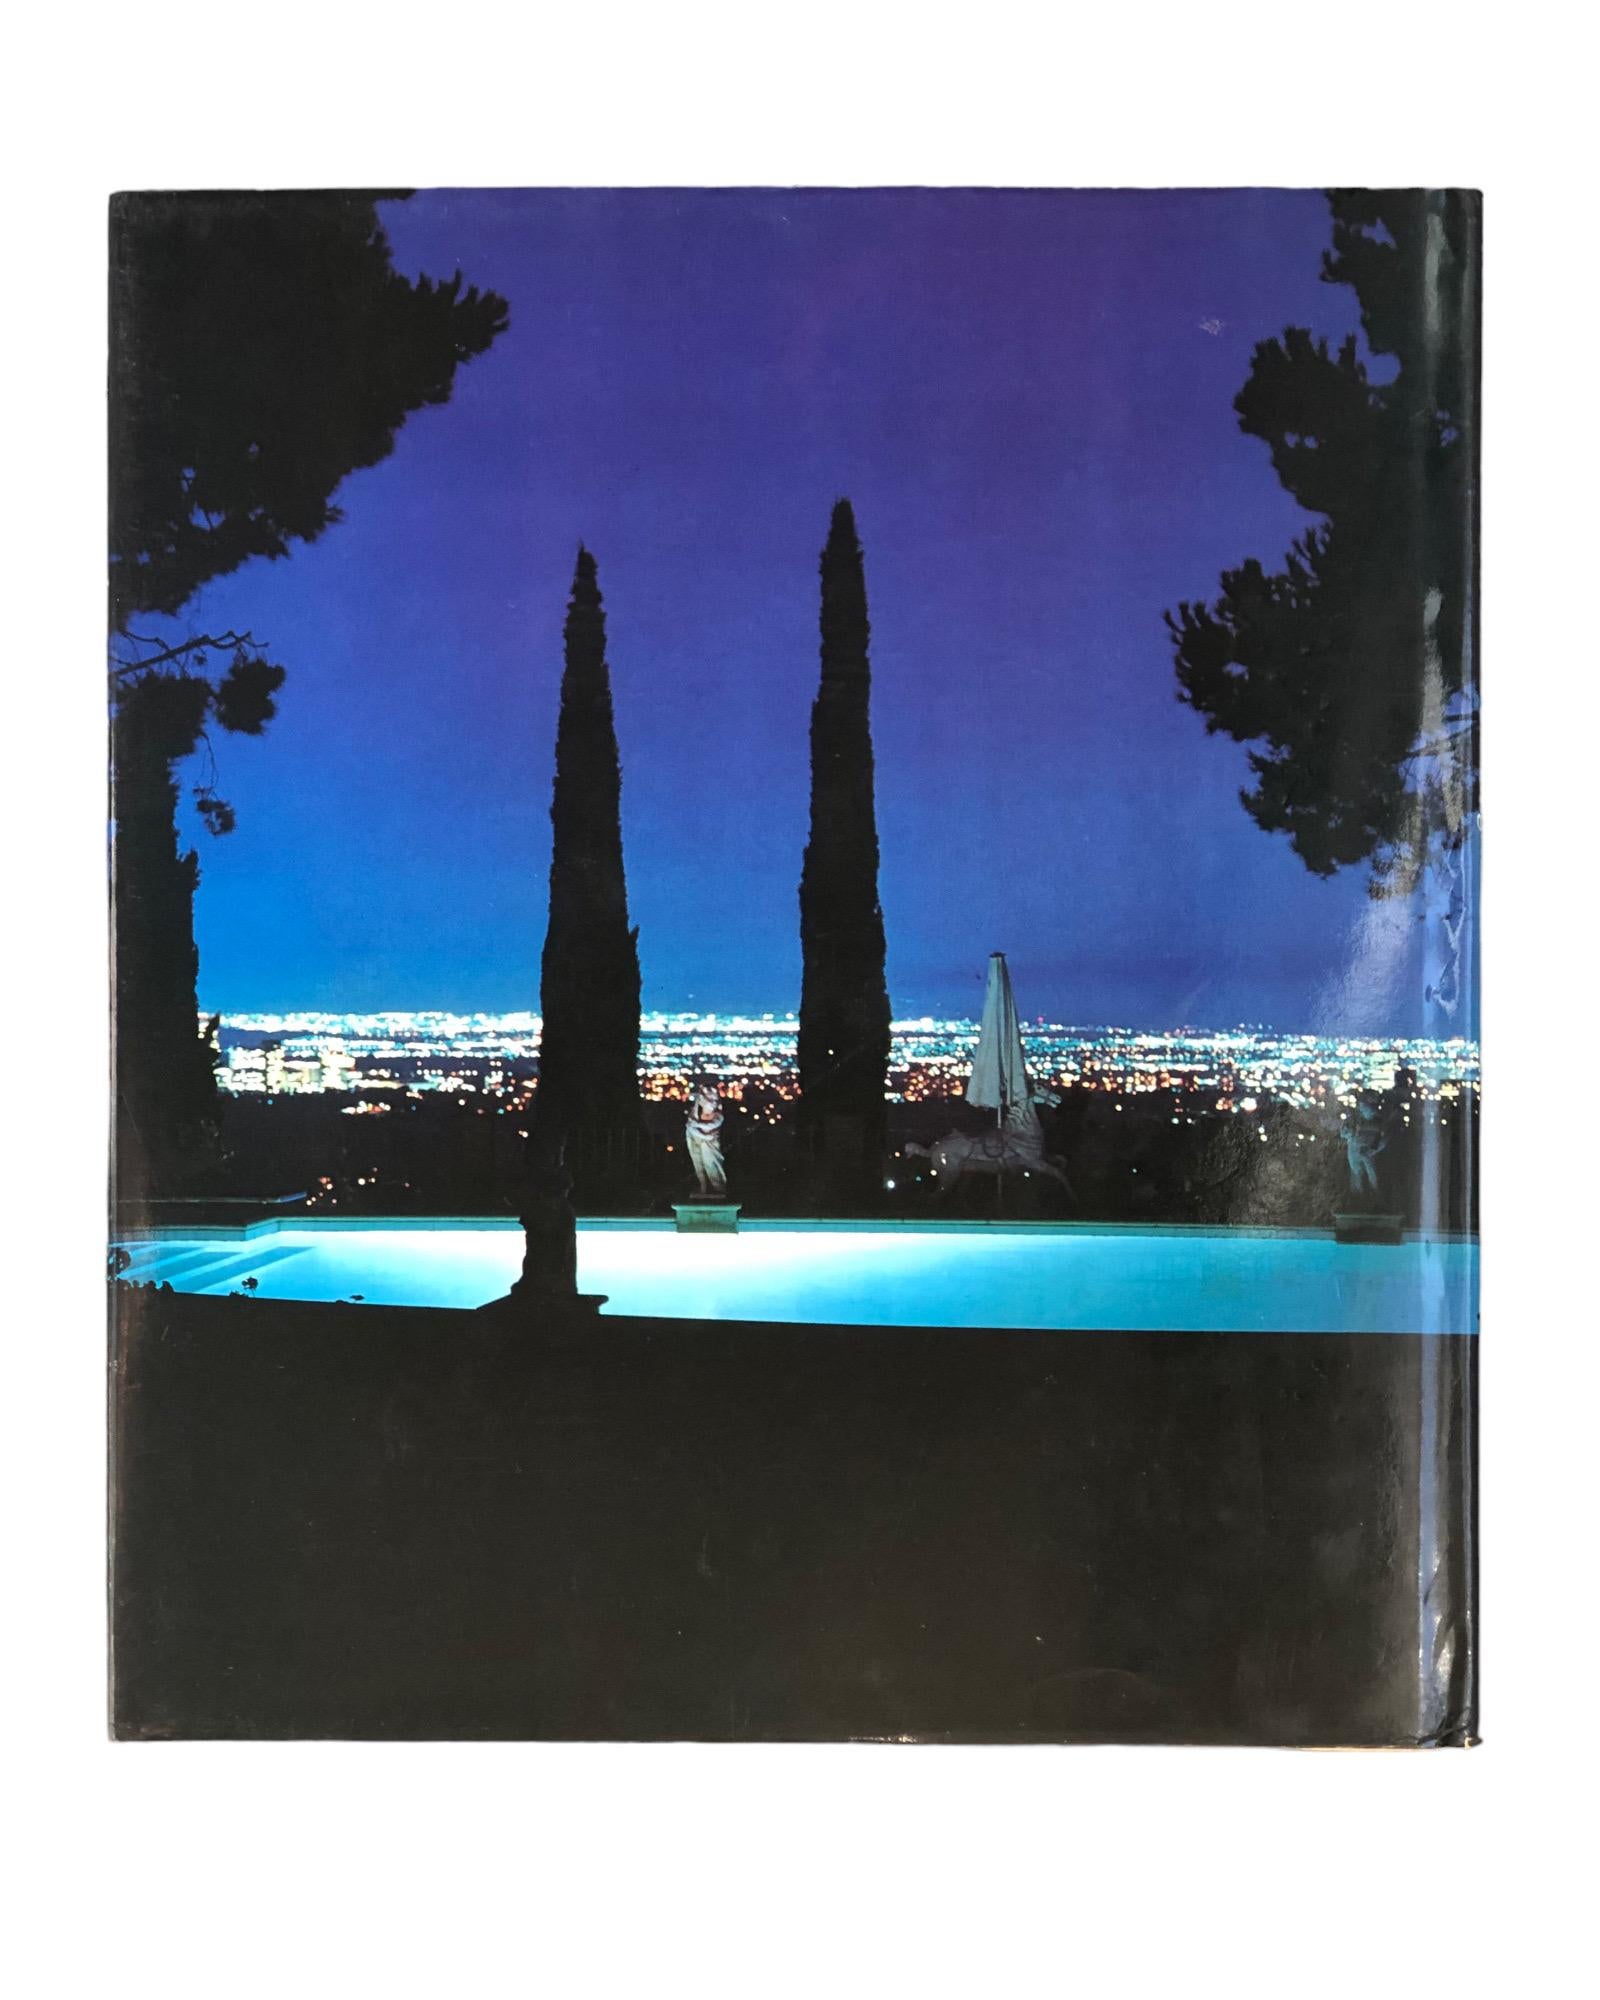 The Dream Come True - Great Houses of Los Angeles, texte de Brendan Gill, photographies de Derry Moore. Livre relié avec jaquette. Première édition américaine. Publié en 1980 par Lippincott & Crowell. Imprimé au Japon. 216 pages.
